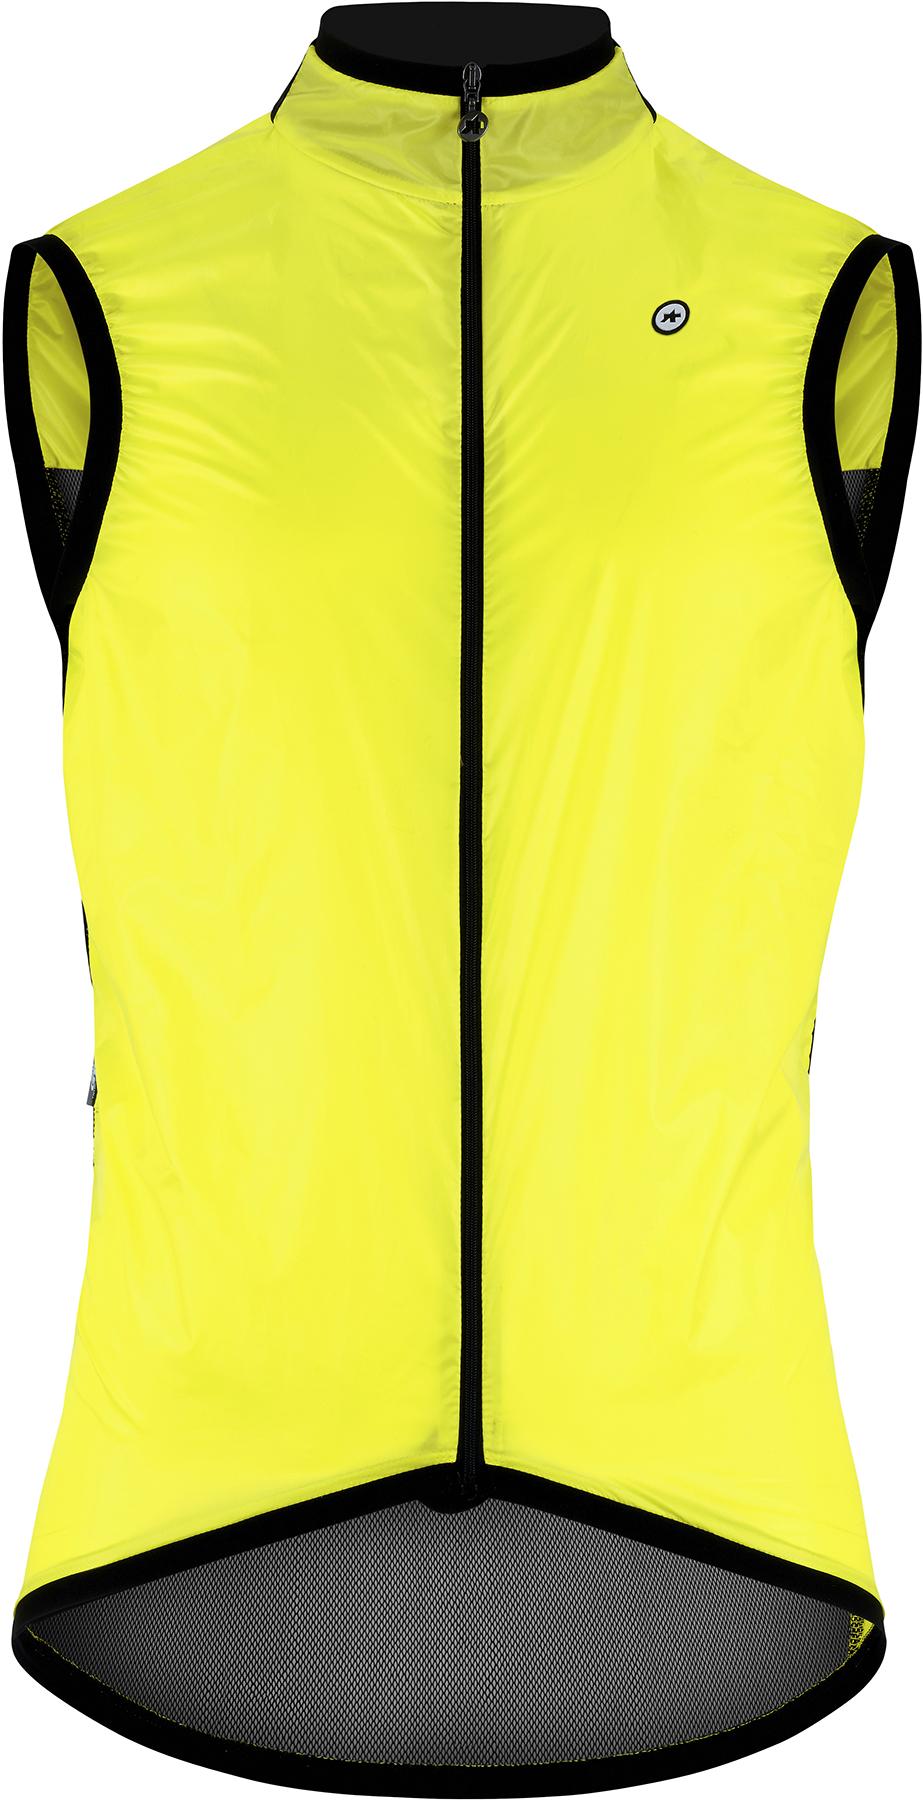 Assos Mille Gt Wind Vest C2 - Optic Yellow